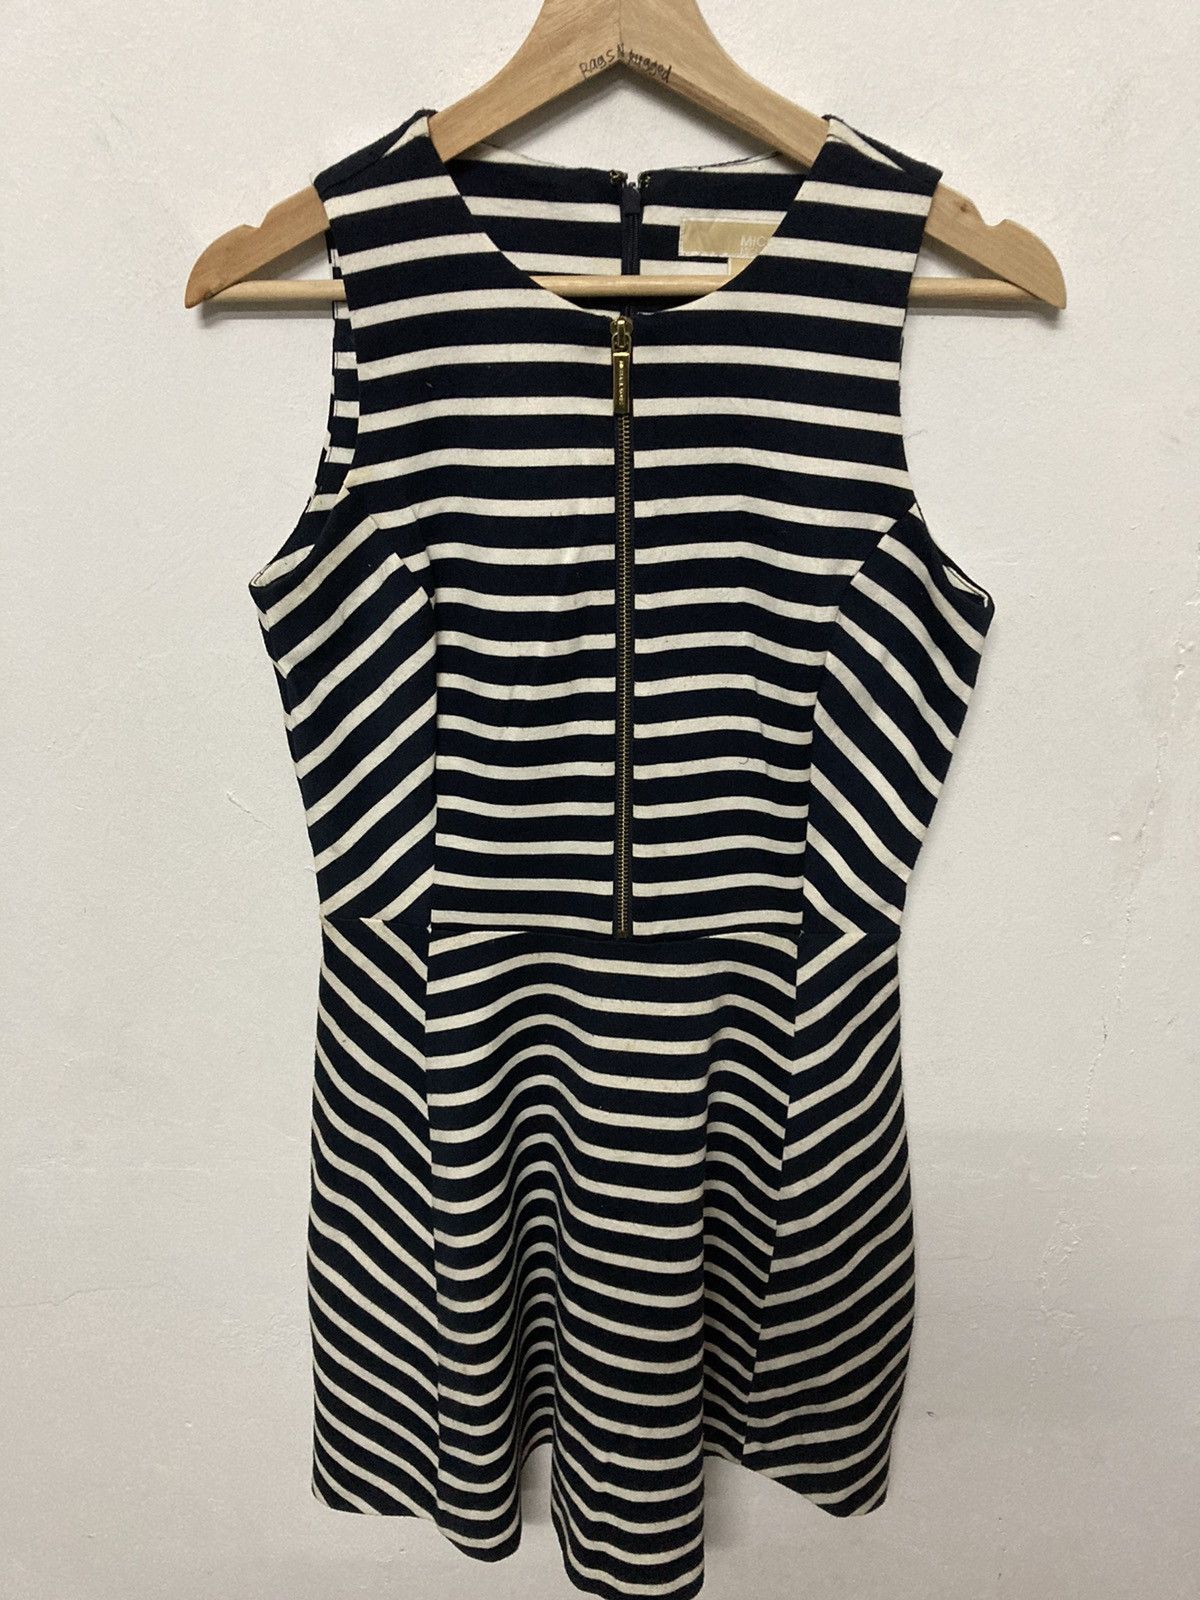 Michael Kors Sleeveless Striped Front Zip A Line Women Dress - 3